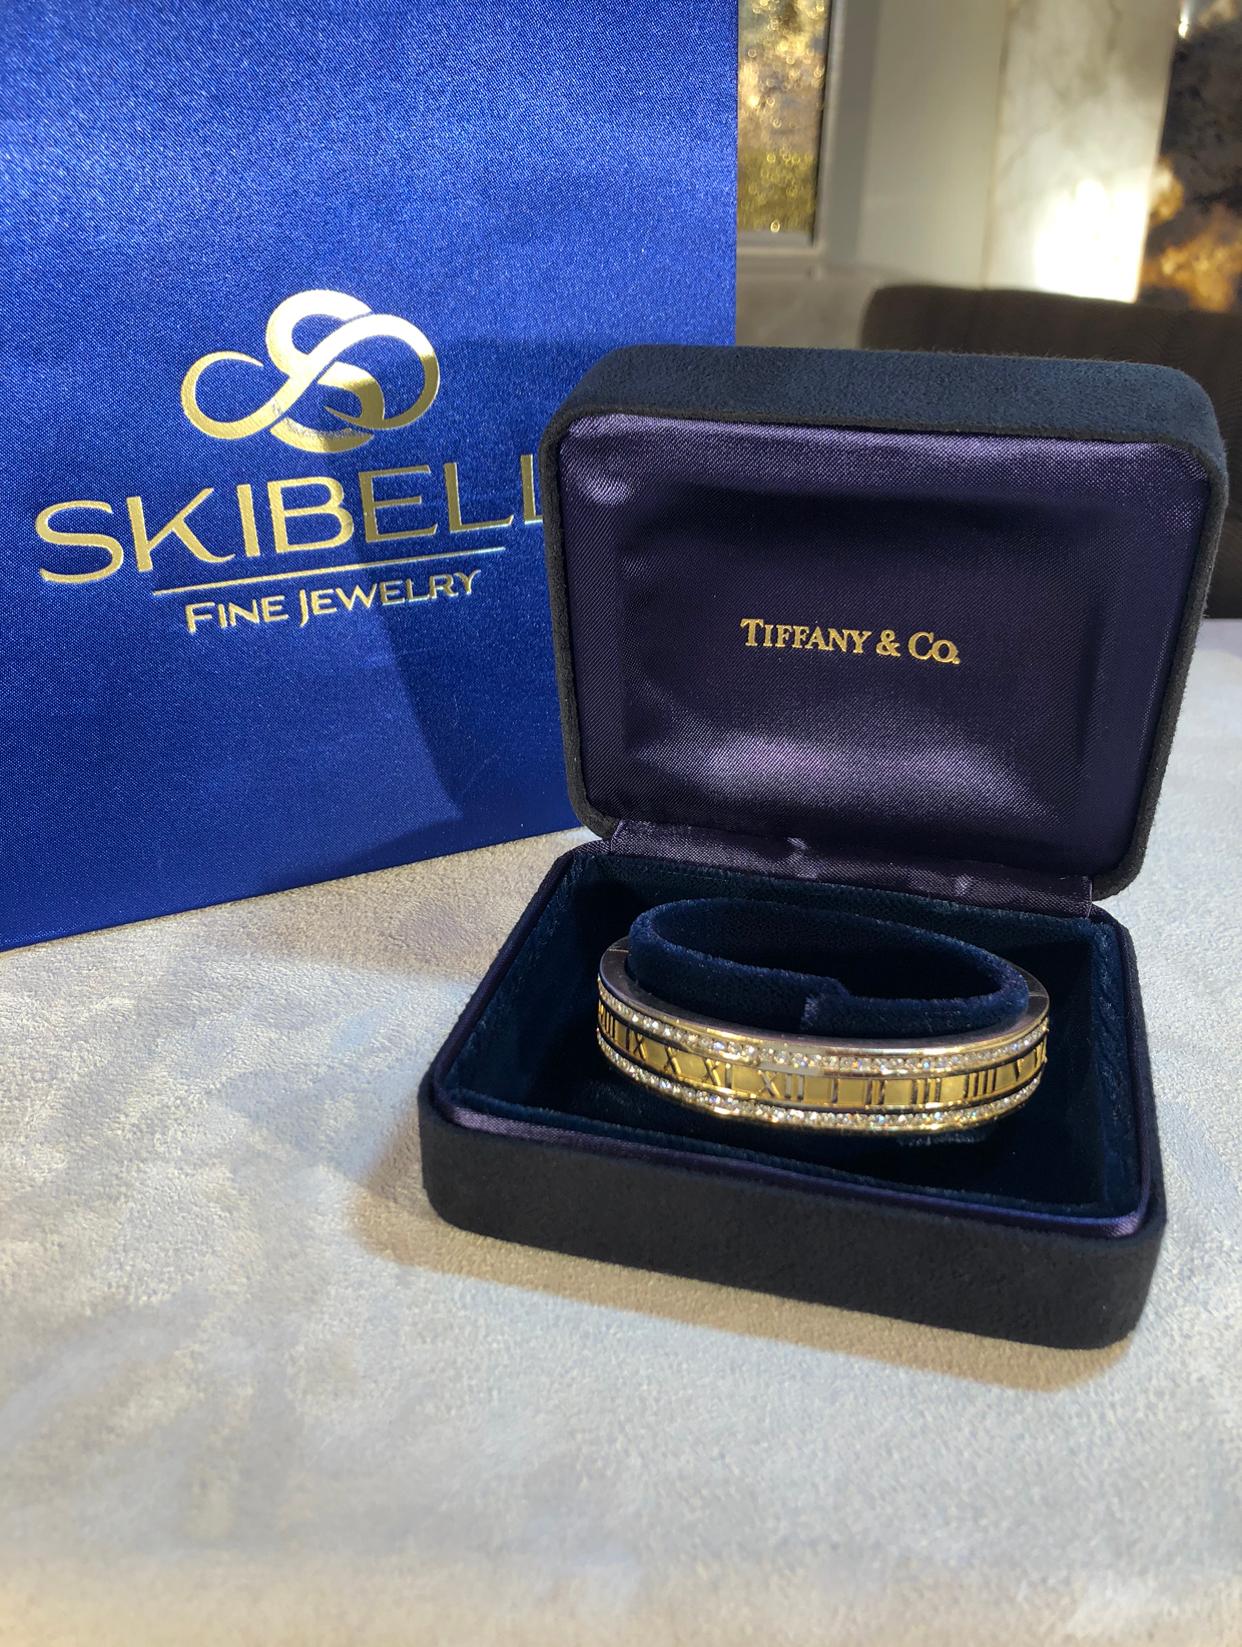 Tiffany & Co. Bracelet Atlas de diamants en or jaune 18K. Le bracelet comporte 3,50ctw de diamants ronds brillants. Le bracelet est large d'un demi-pouce, a une circonférence intérieure de 7,25 pouces et pèse 53 grammes. Signé Tiffany Co Italy 1995.